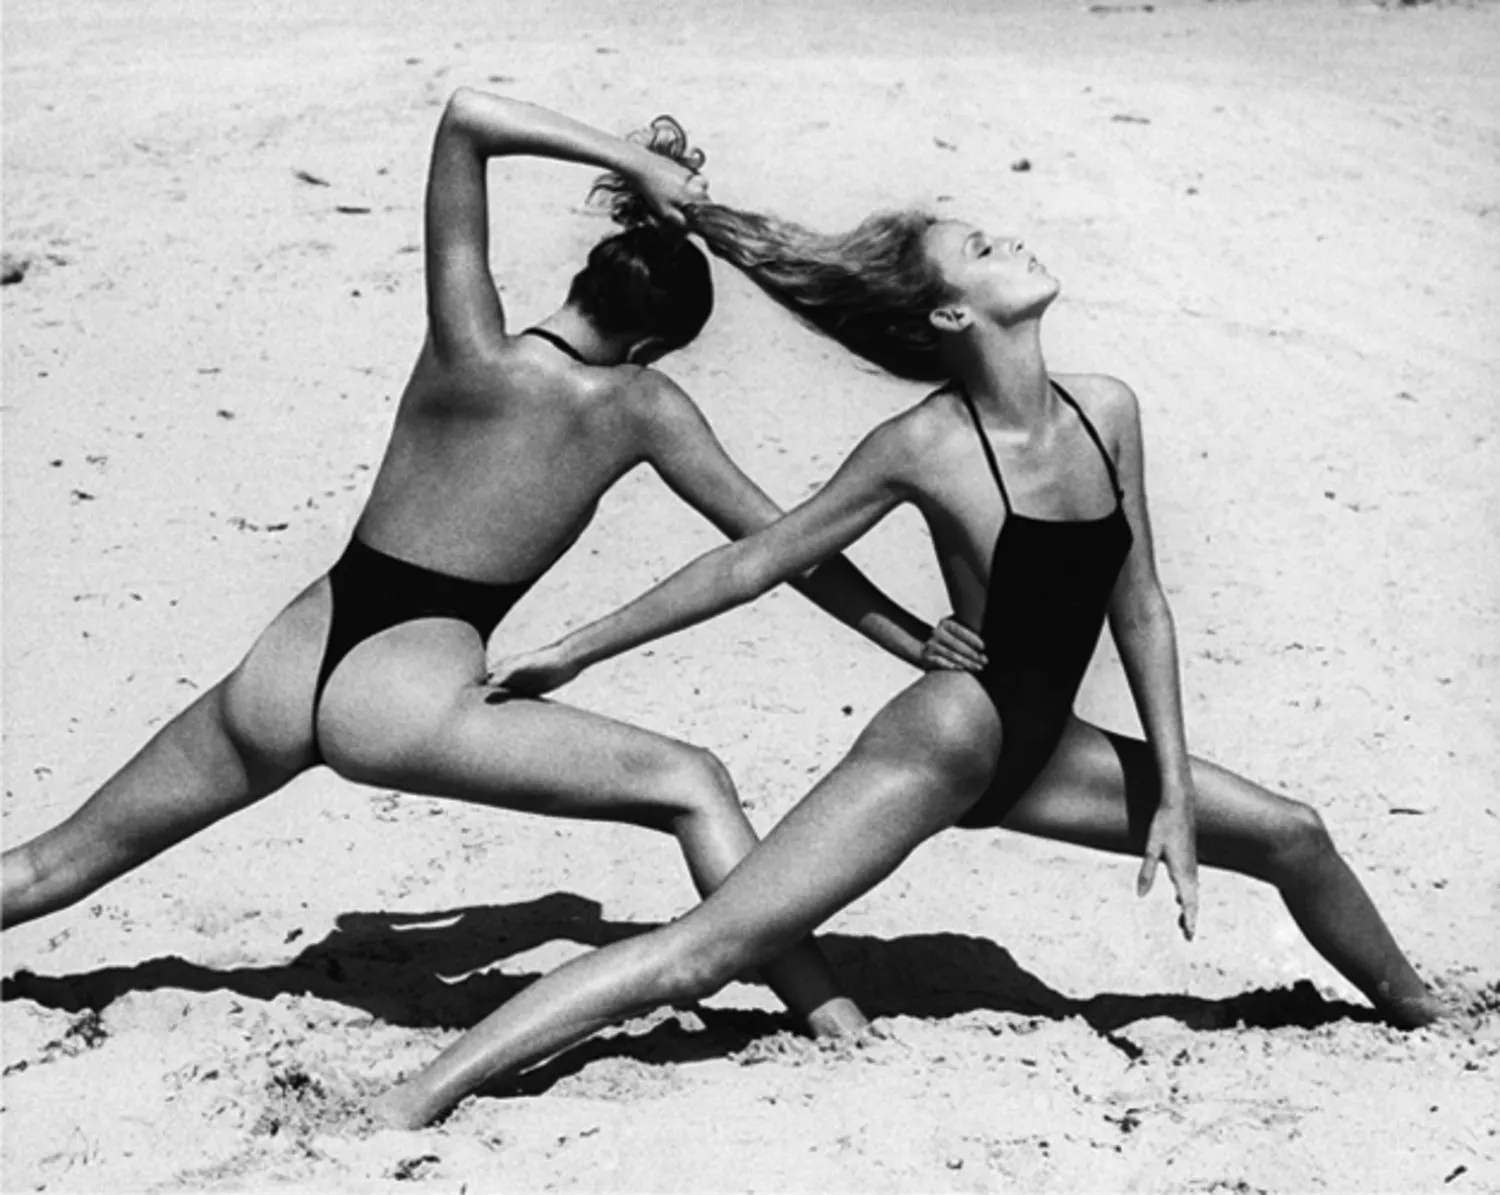 Fotografija prve tange gaćice ikada predstavljene u svetu. Ženski model tanga jednodelnog kupaćeg kostima šokirao je plaže 70-ih.